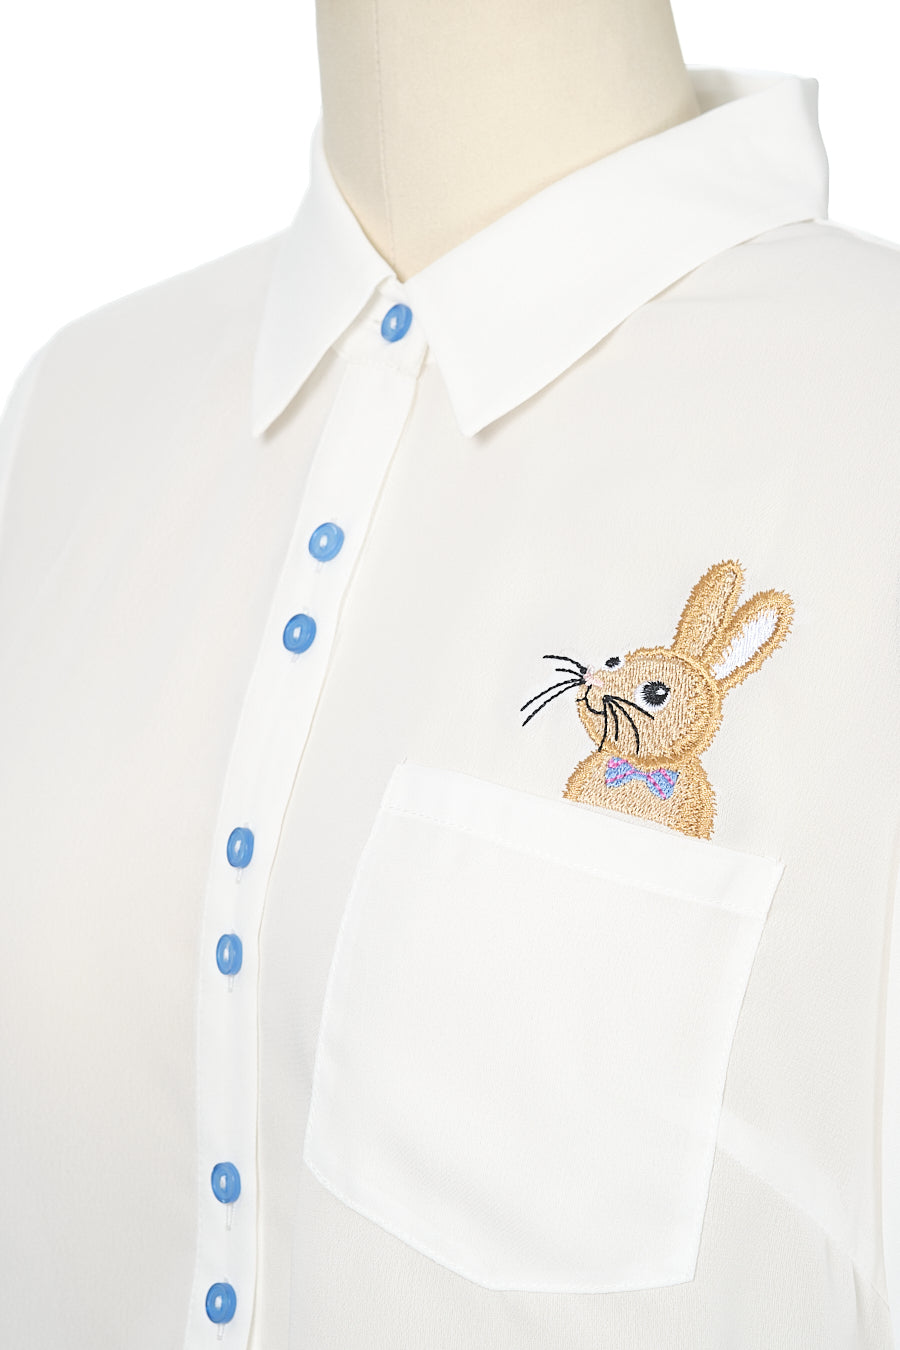 Little Friend in My Pocket Shirt- Bunny